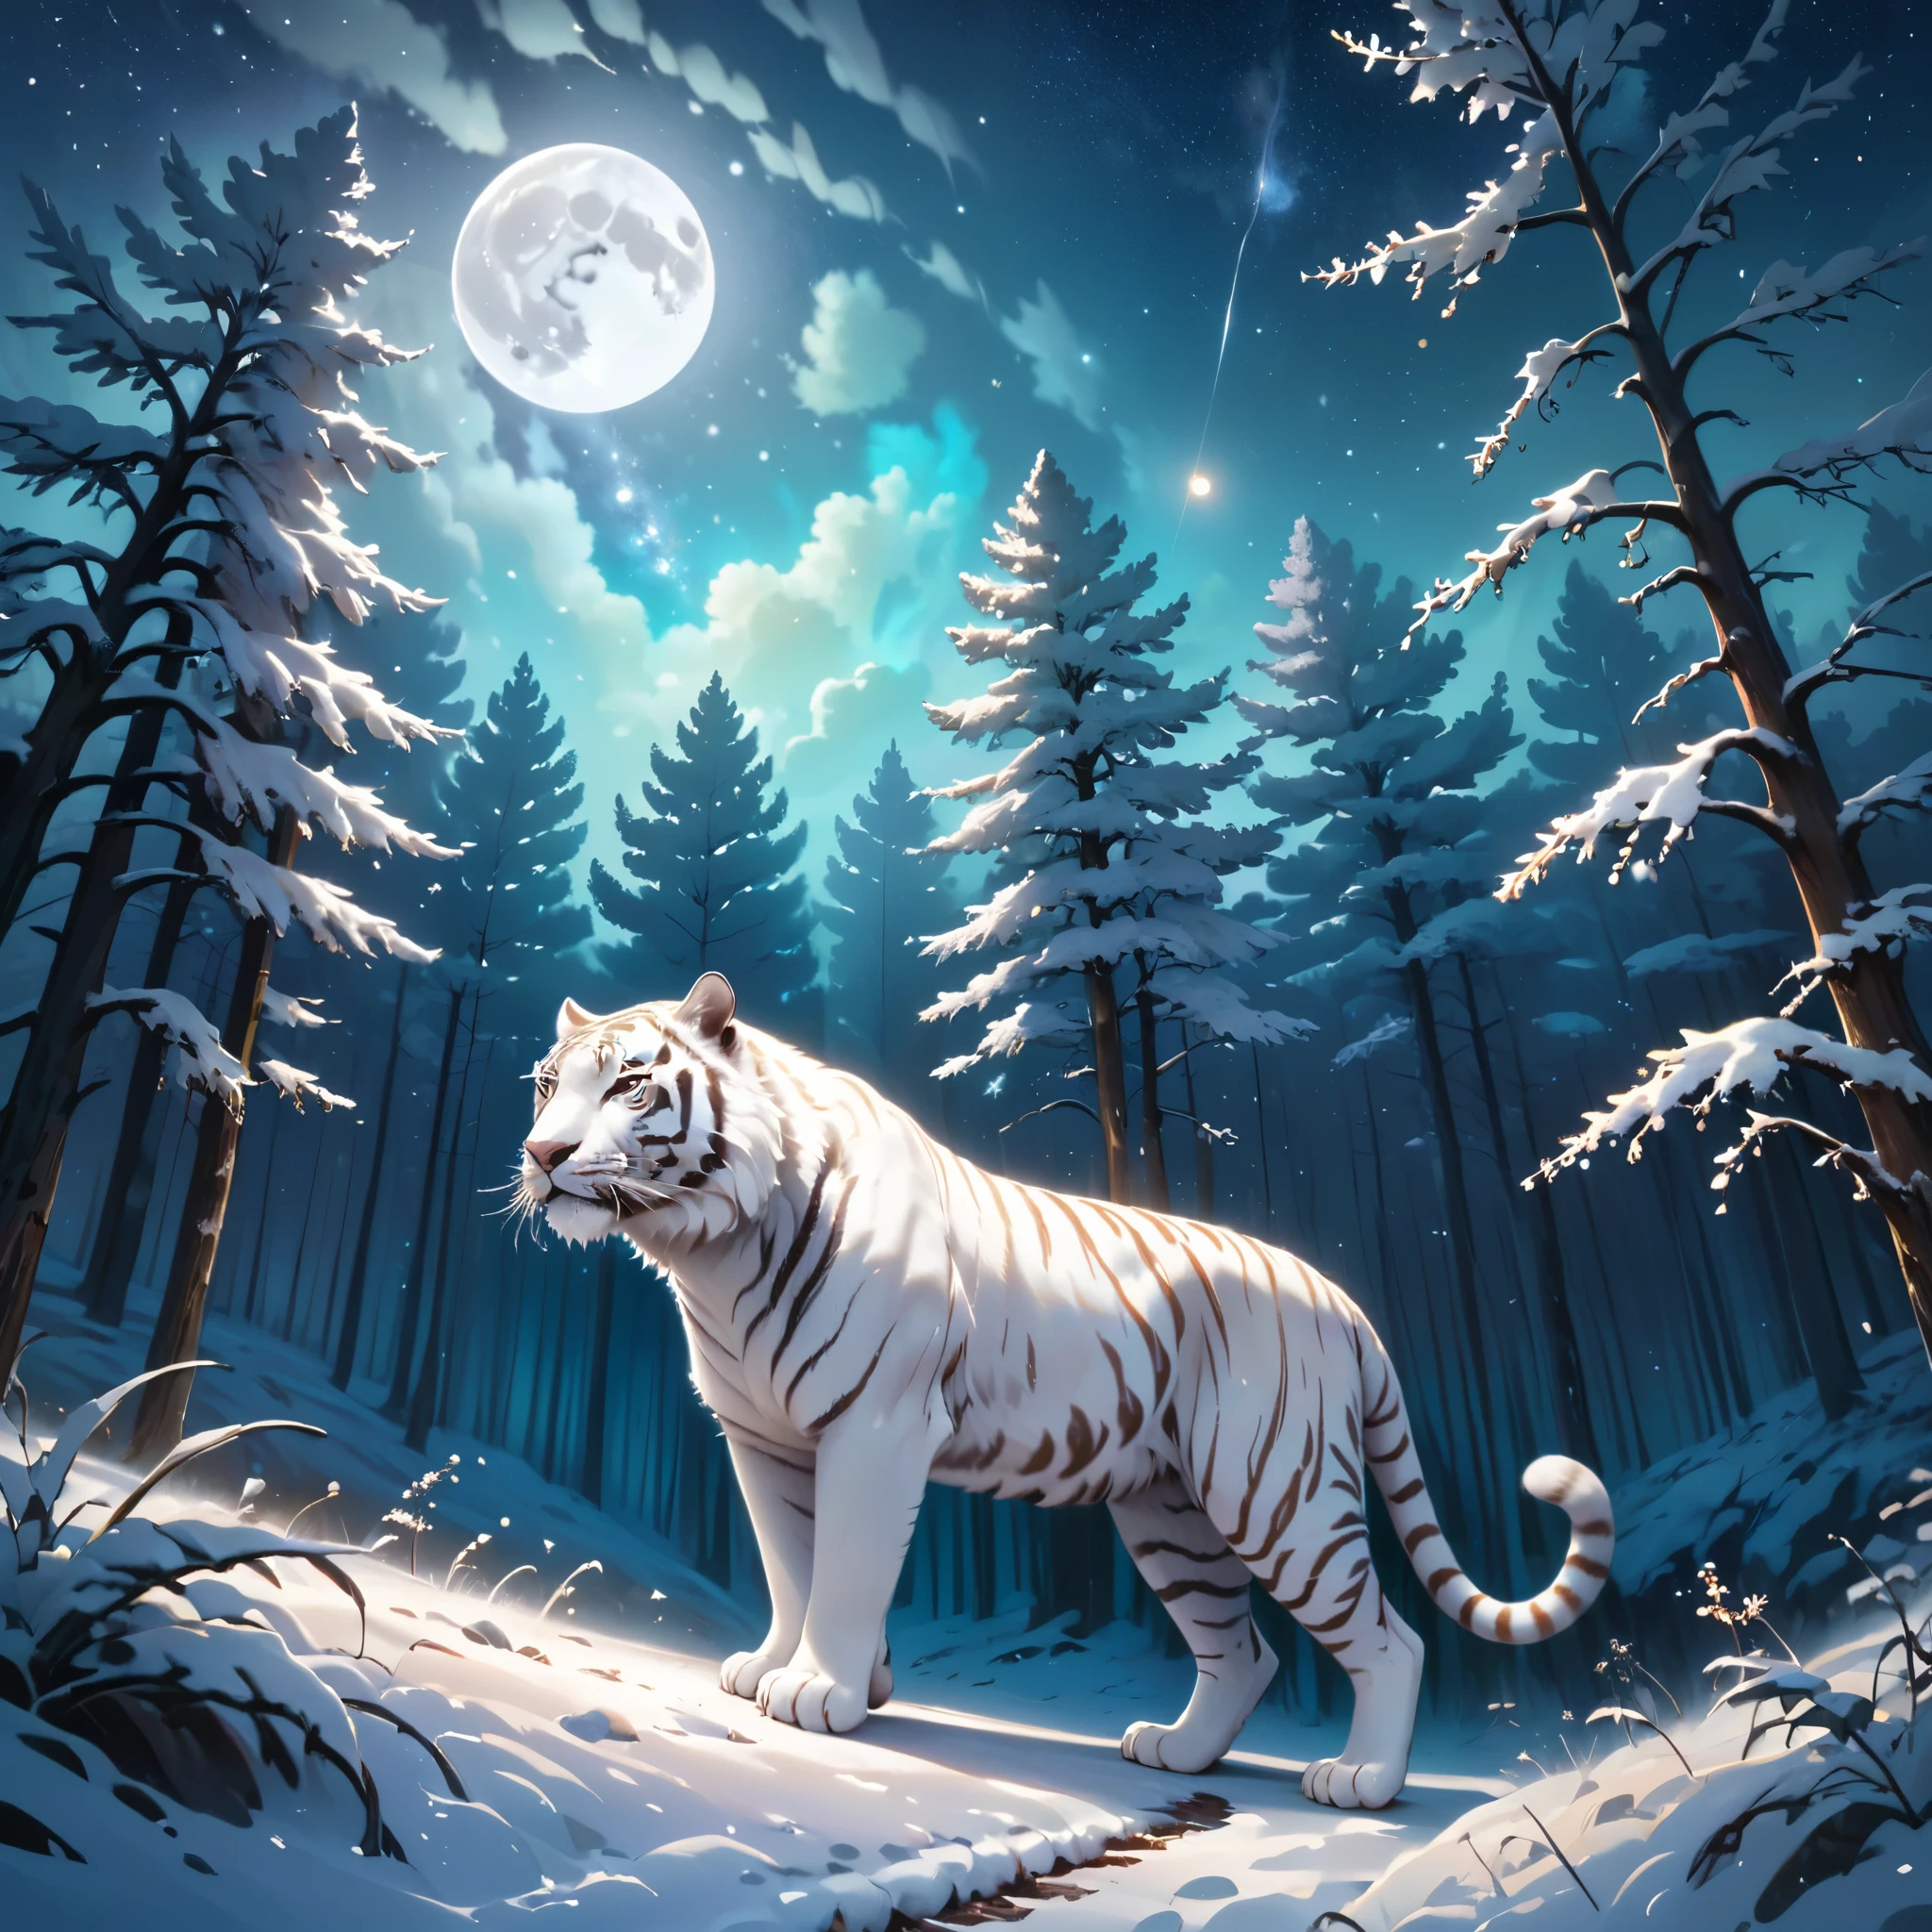 обширная пейзажная фотография (вид снизу: небо вверху и открытый лес внизу), Белый тигр идет по тропинке и смотрит на пейзаж, Белый сибирский тигр, Полный мех, белый мех (частица света вокруг тигра), тоффу мех, ночной пейзаж, (полнолуние: 1.2), (падающие звезды: 0.9), (туманность: 1.3), (источник теплого света: 1.2), (Светляк: 1.2), ( снежинка: 1.0), (снег на дереве) (шедевр: 1.2), (Лучшее качество), 4K, Ультра подробный, (динамическая композиция: 1.4), Очень подробные и красочные детали, (переливающиеся цвета: 1 ,2), (яркое освещение, окружающее освещение), Мечтательный, волшебный, (один: 1,2)